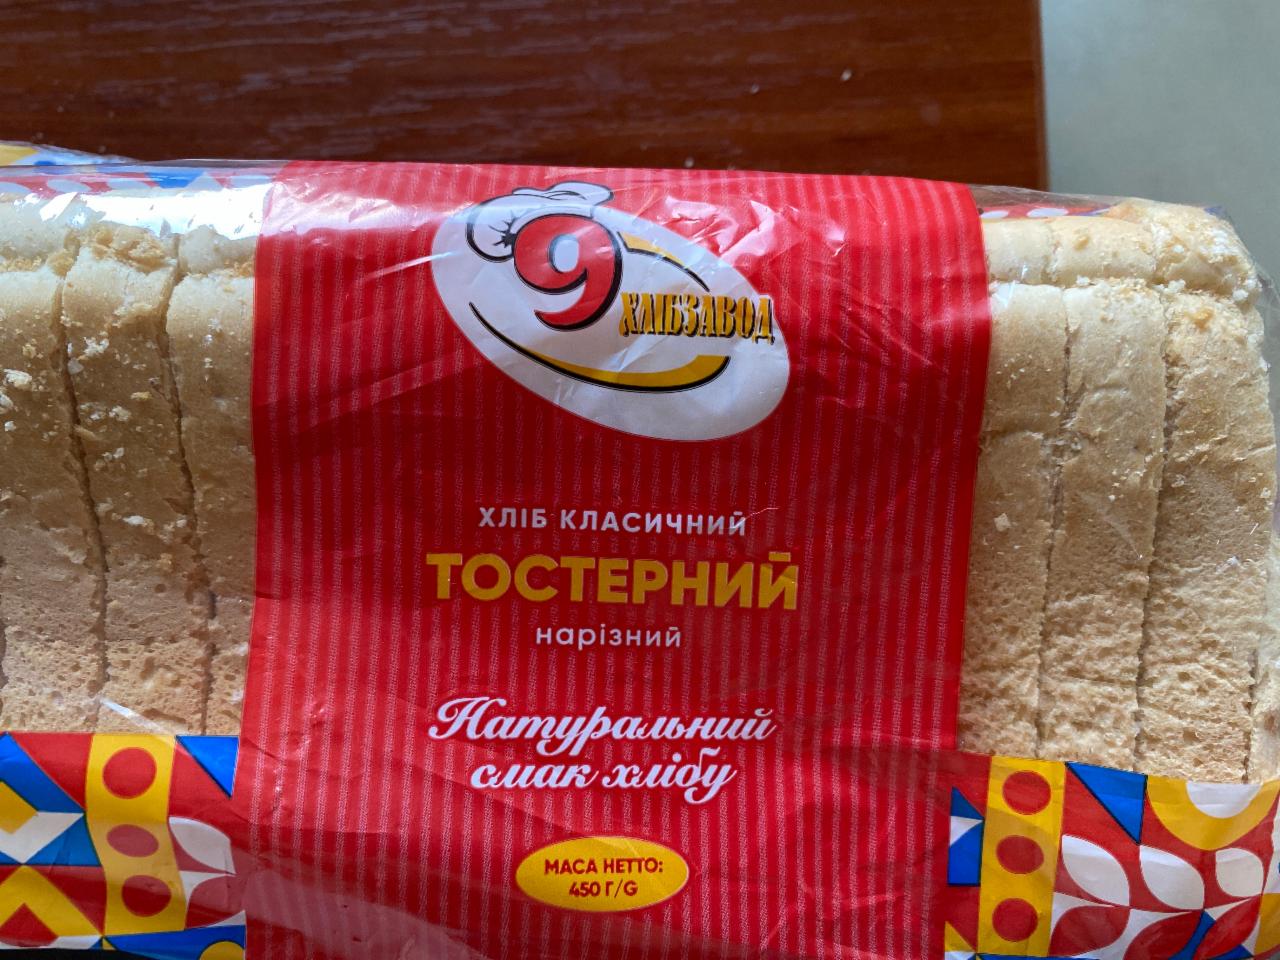 Фото - Хліб класичний тостерний нарізний 9 хлібозавод